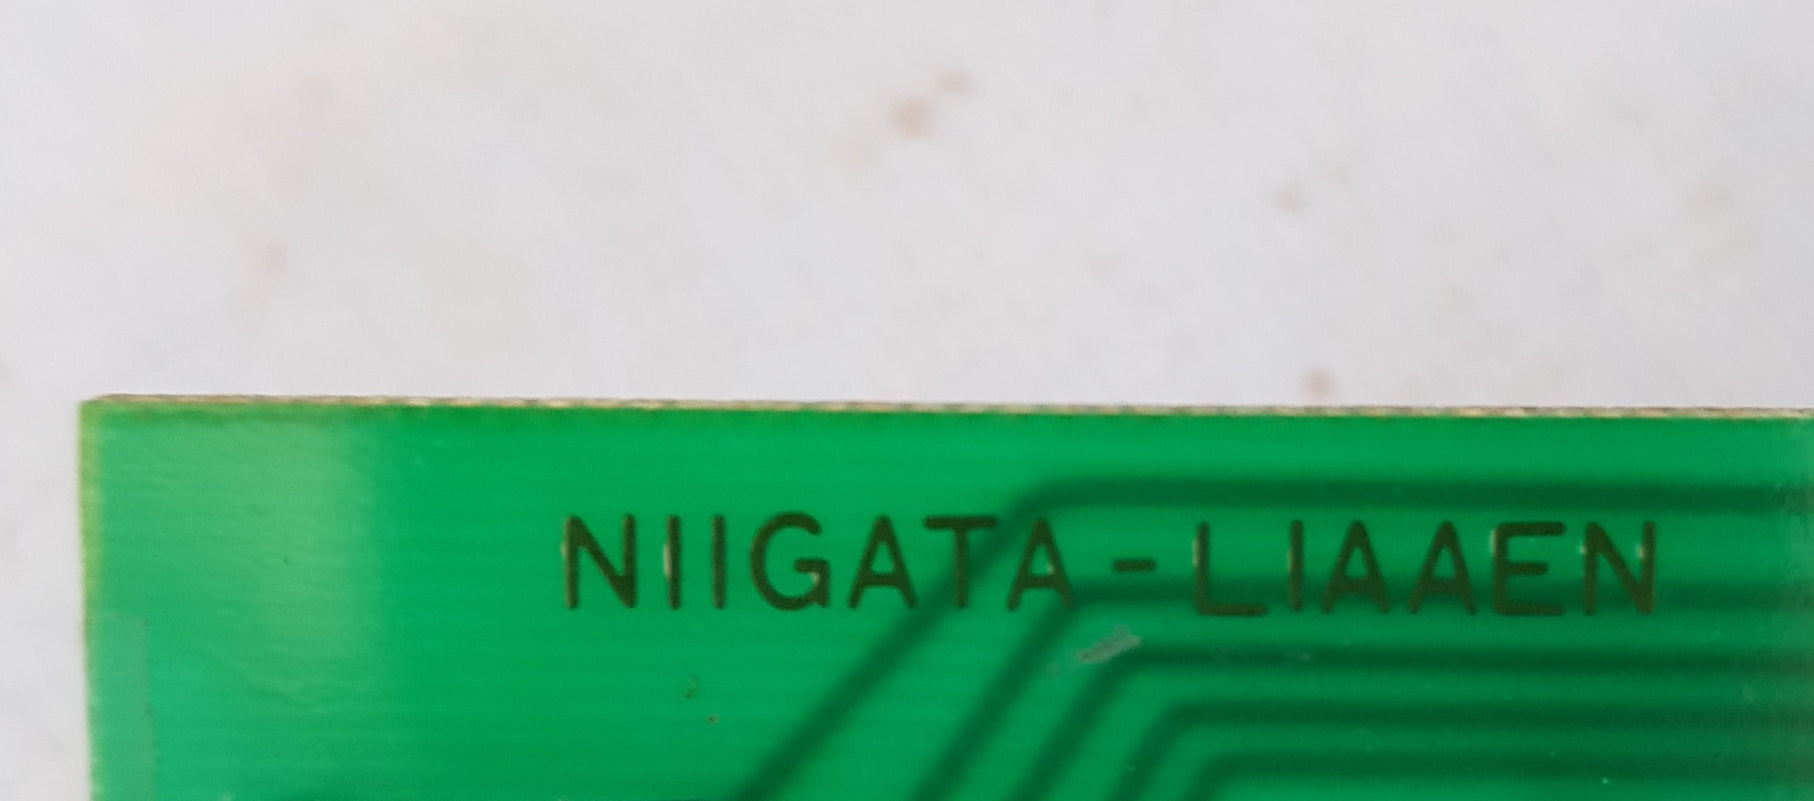 Niigata-liaaen pc-4 pcb card